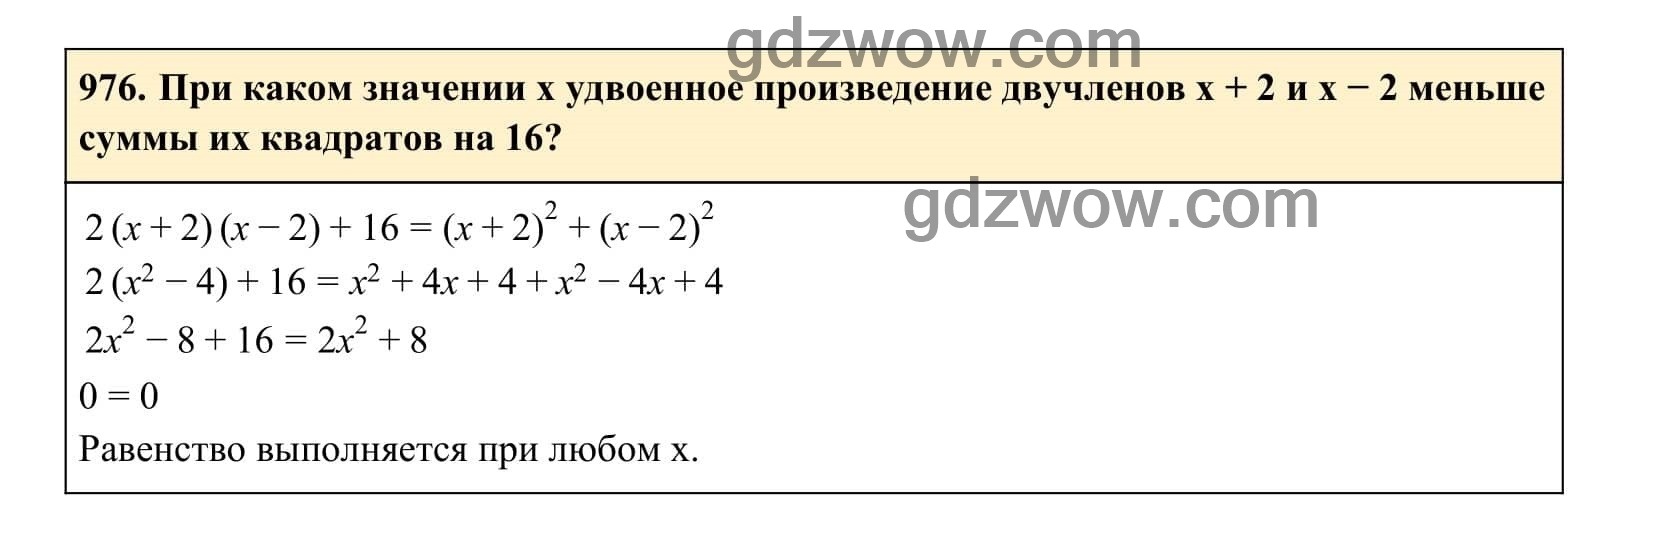 Упражнение 976 - ГДЗ по Алгебре 7 класс Учебник Макарычев (решебник) - GDZwow